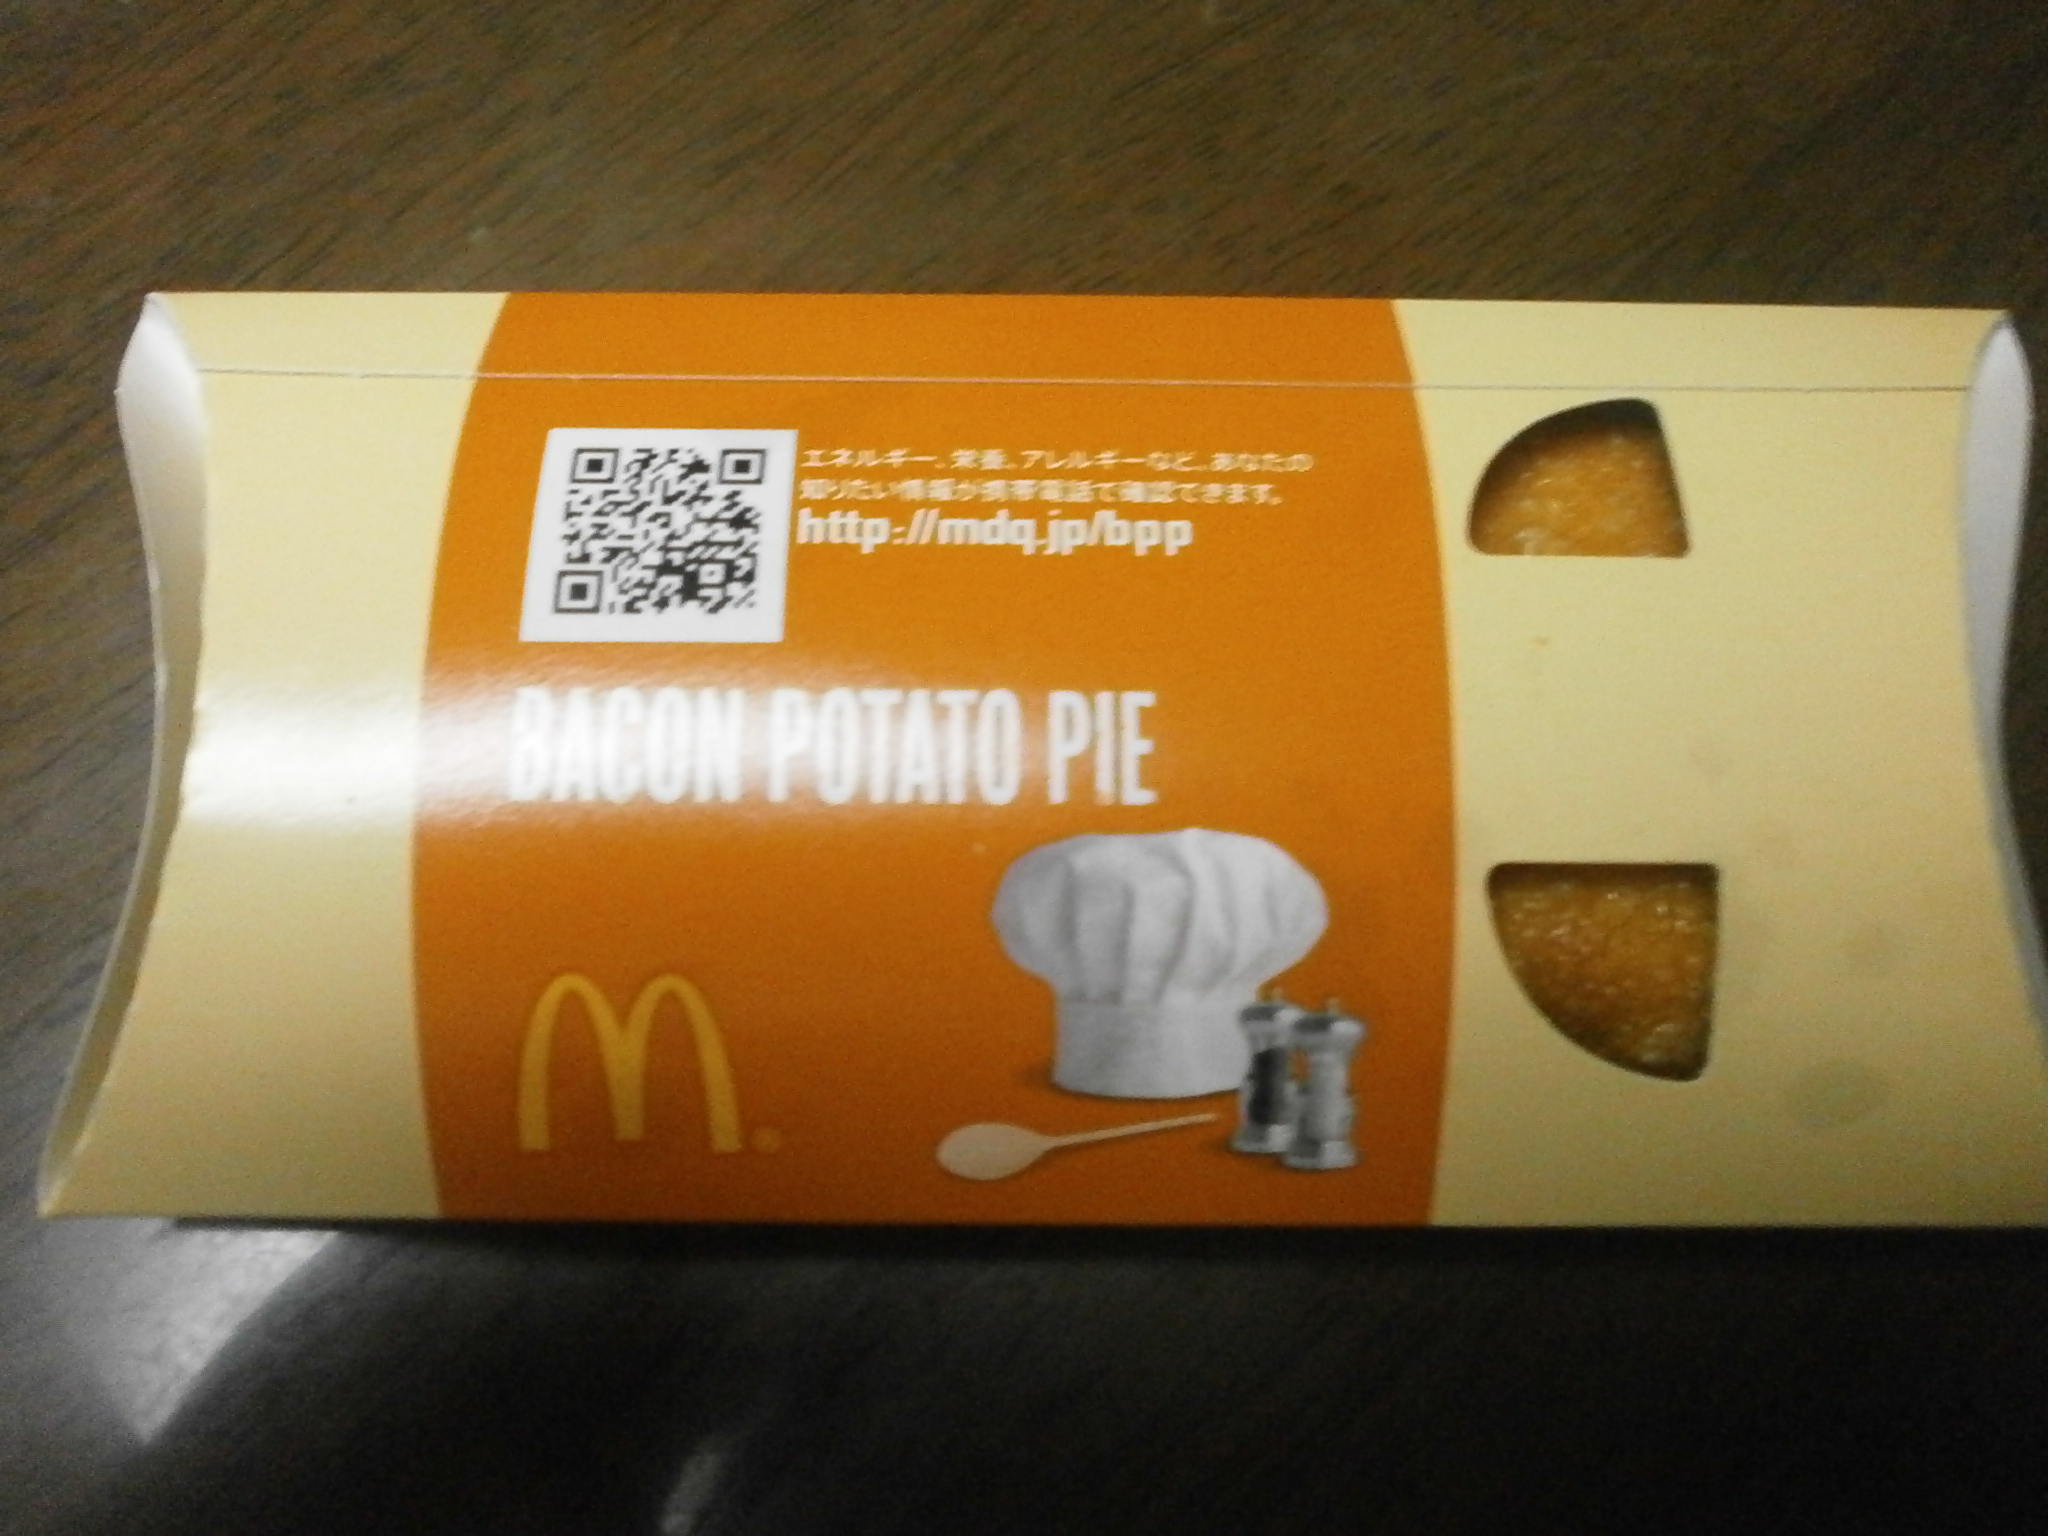 Che ad alto contenuto calorico? Torta di patate pancetta? Hot Apple Pie?